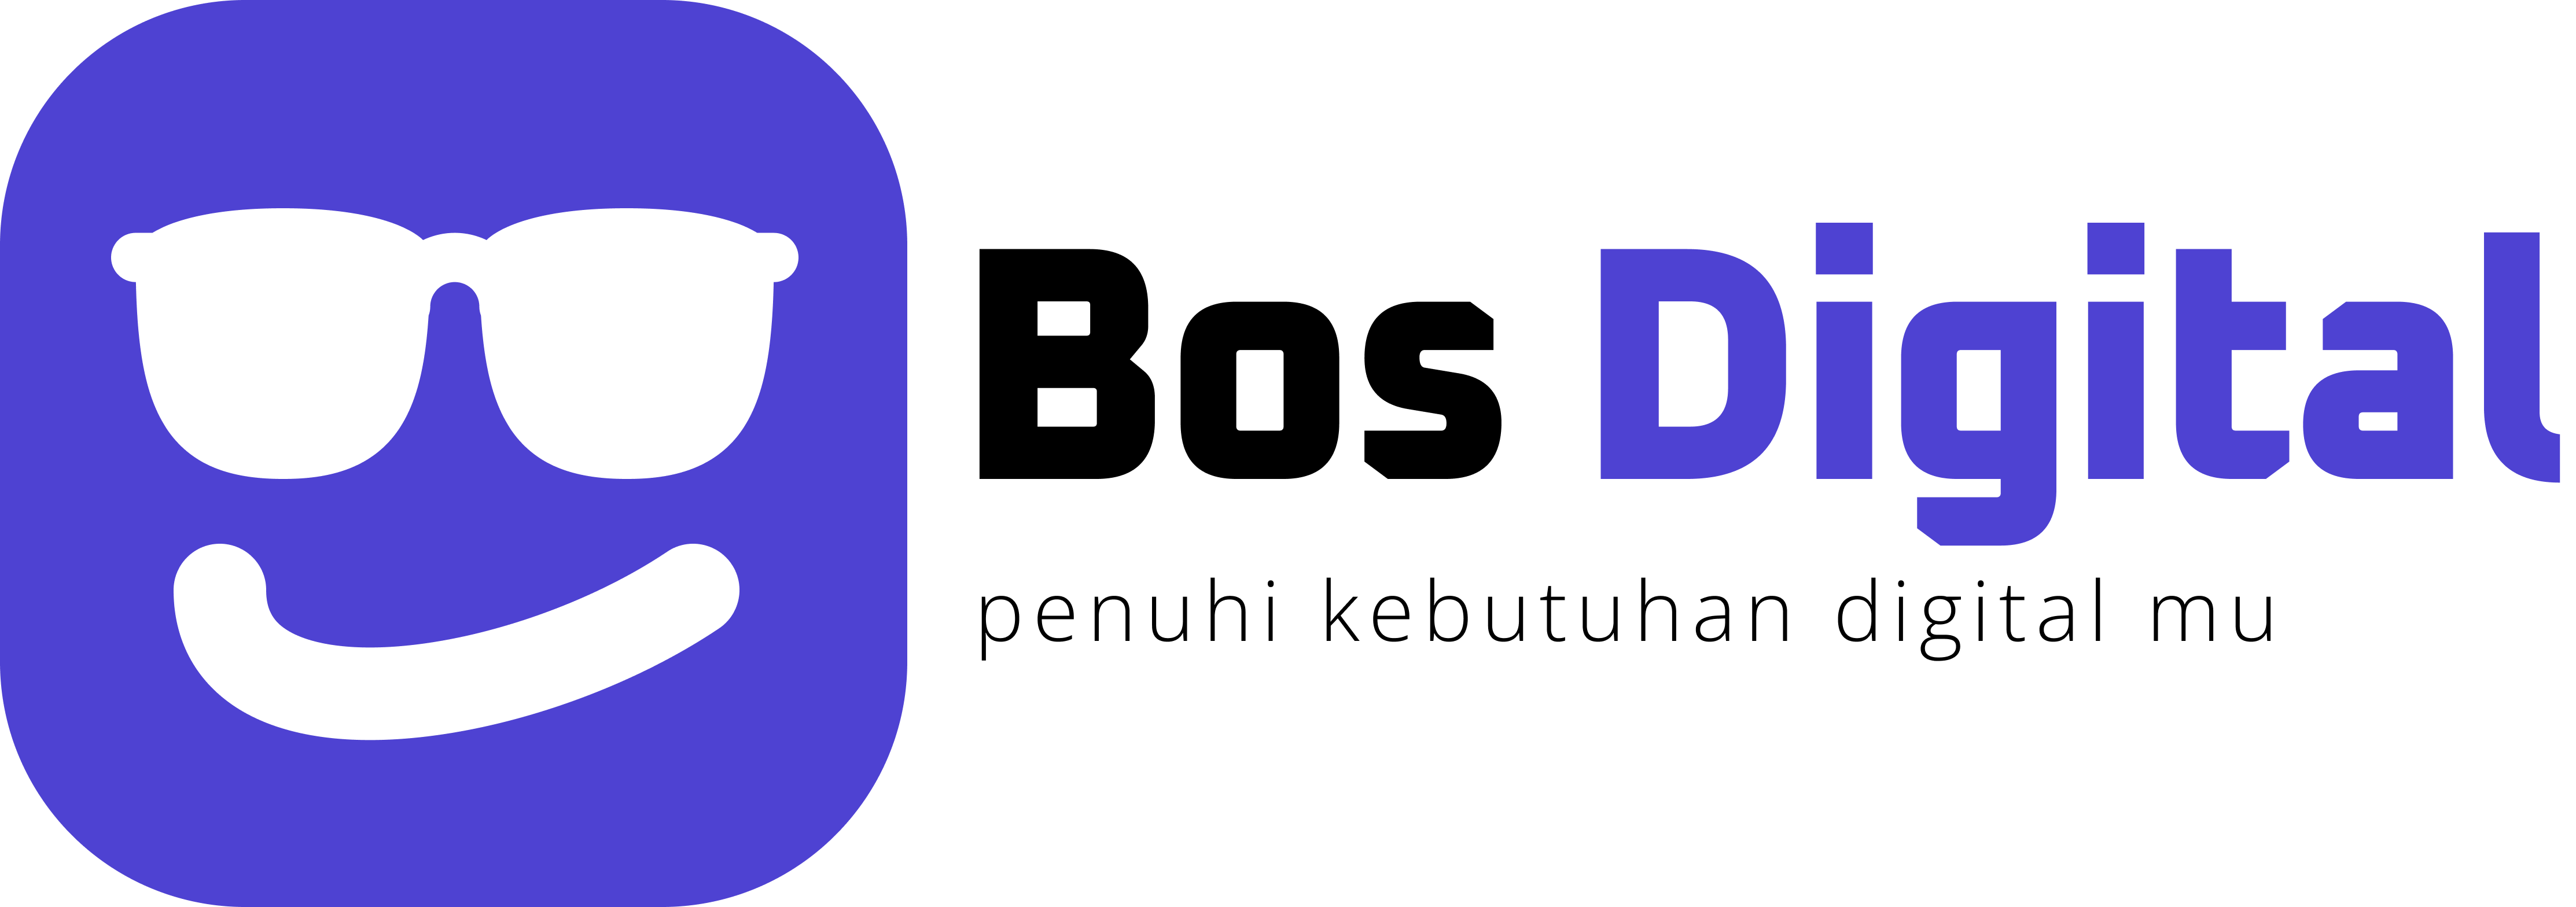 Logo BOS DIGITAL